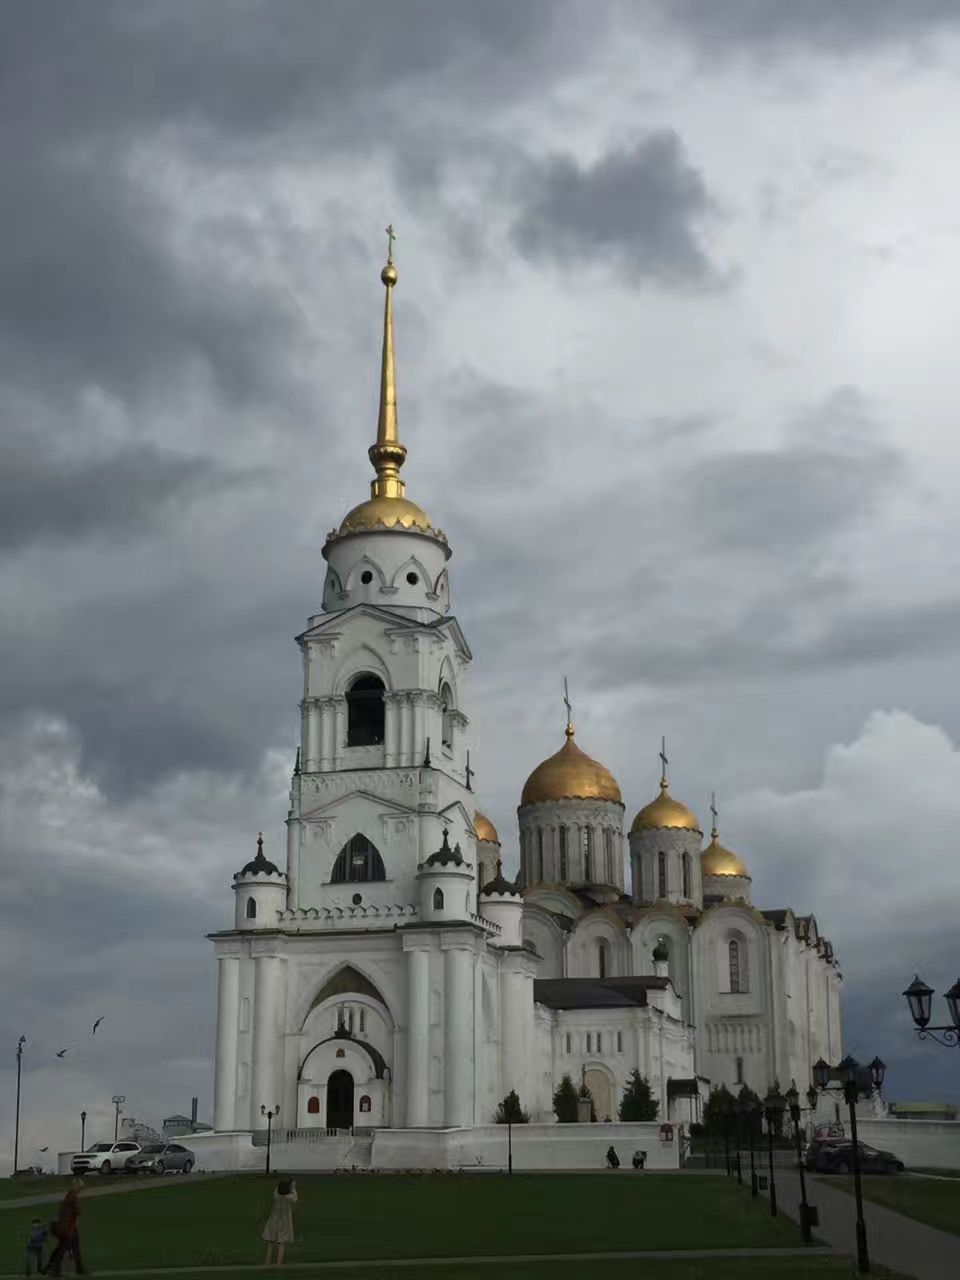 圣母升天大教堂是俄罗斯现存最古老教堂，至今依然保存完好。几个世纪以来，一直是俄罗斯精神和政治中心。挺